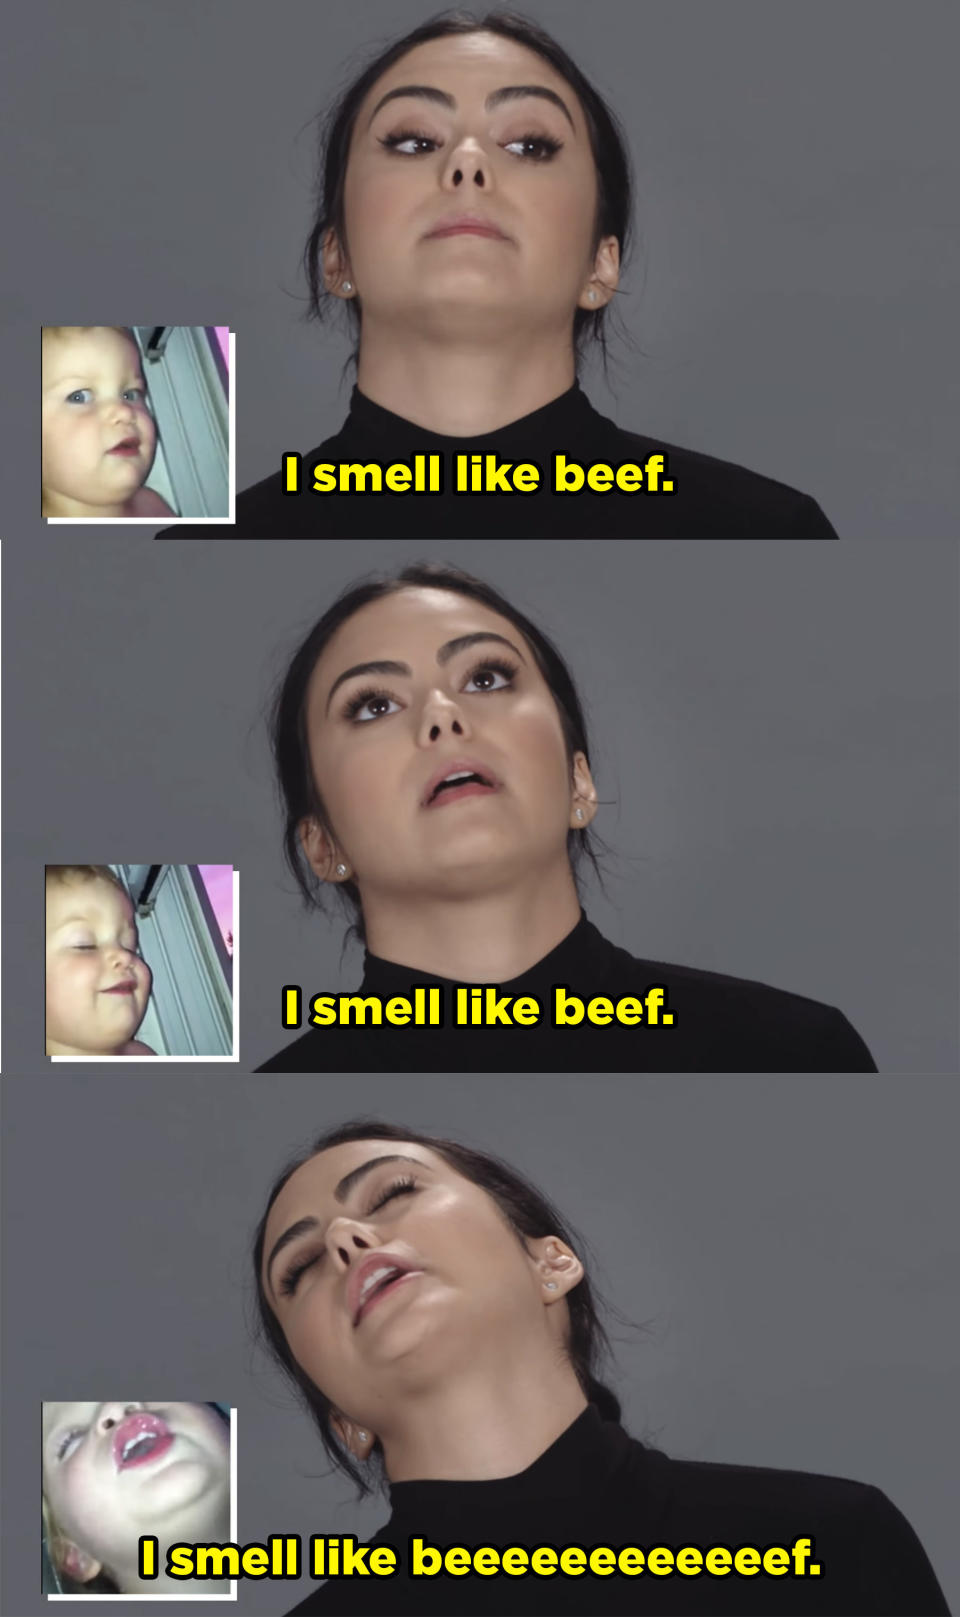 "I smell like beef."